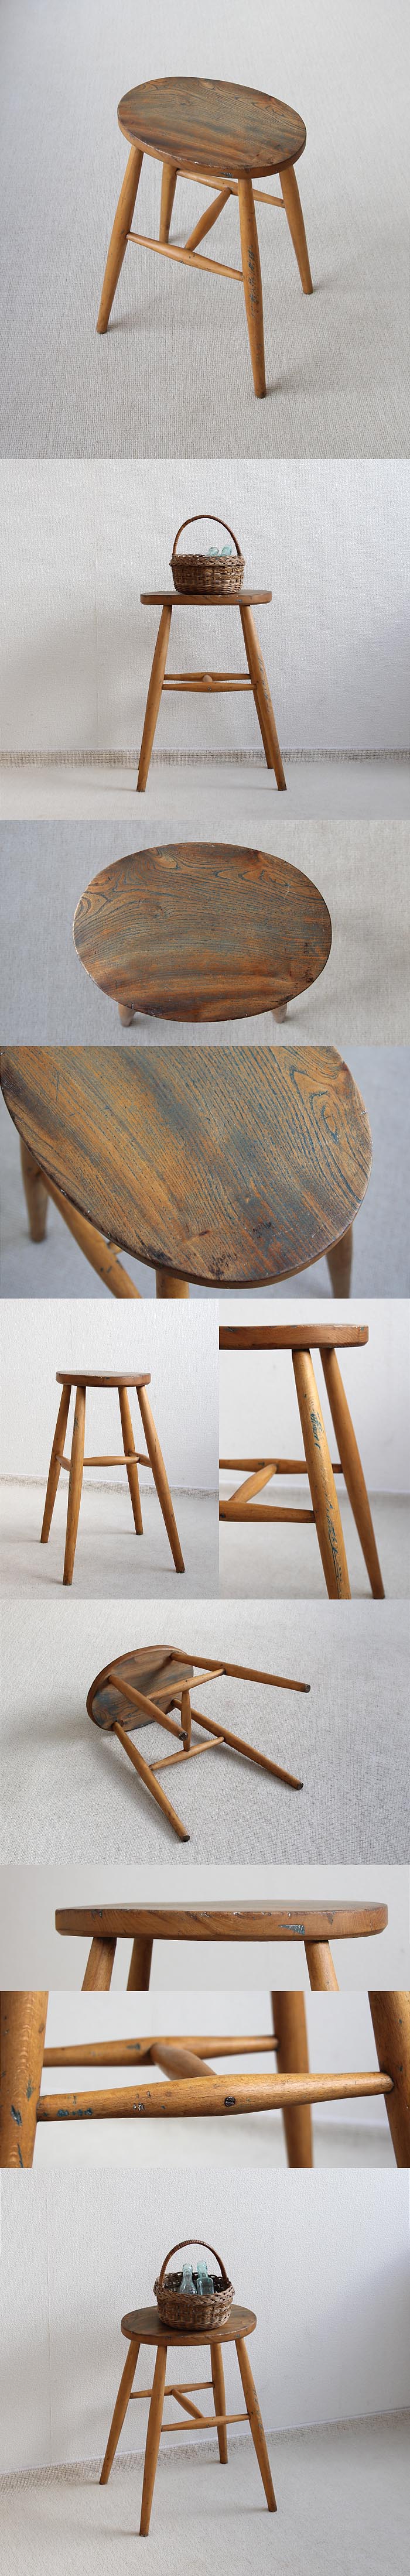 イギリス アンティーク スツール 木製椅子 カントリー 無垢材 英国